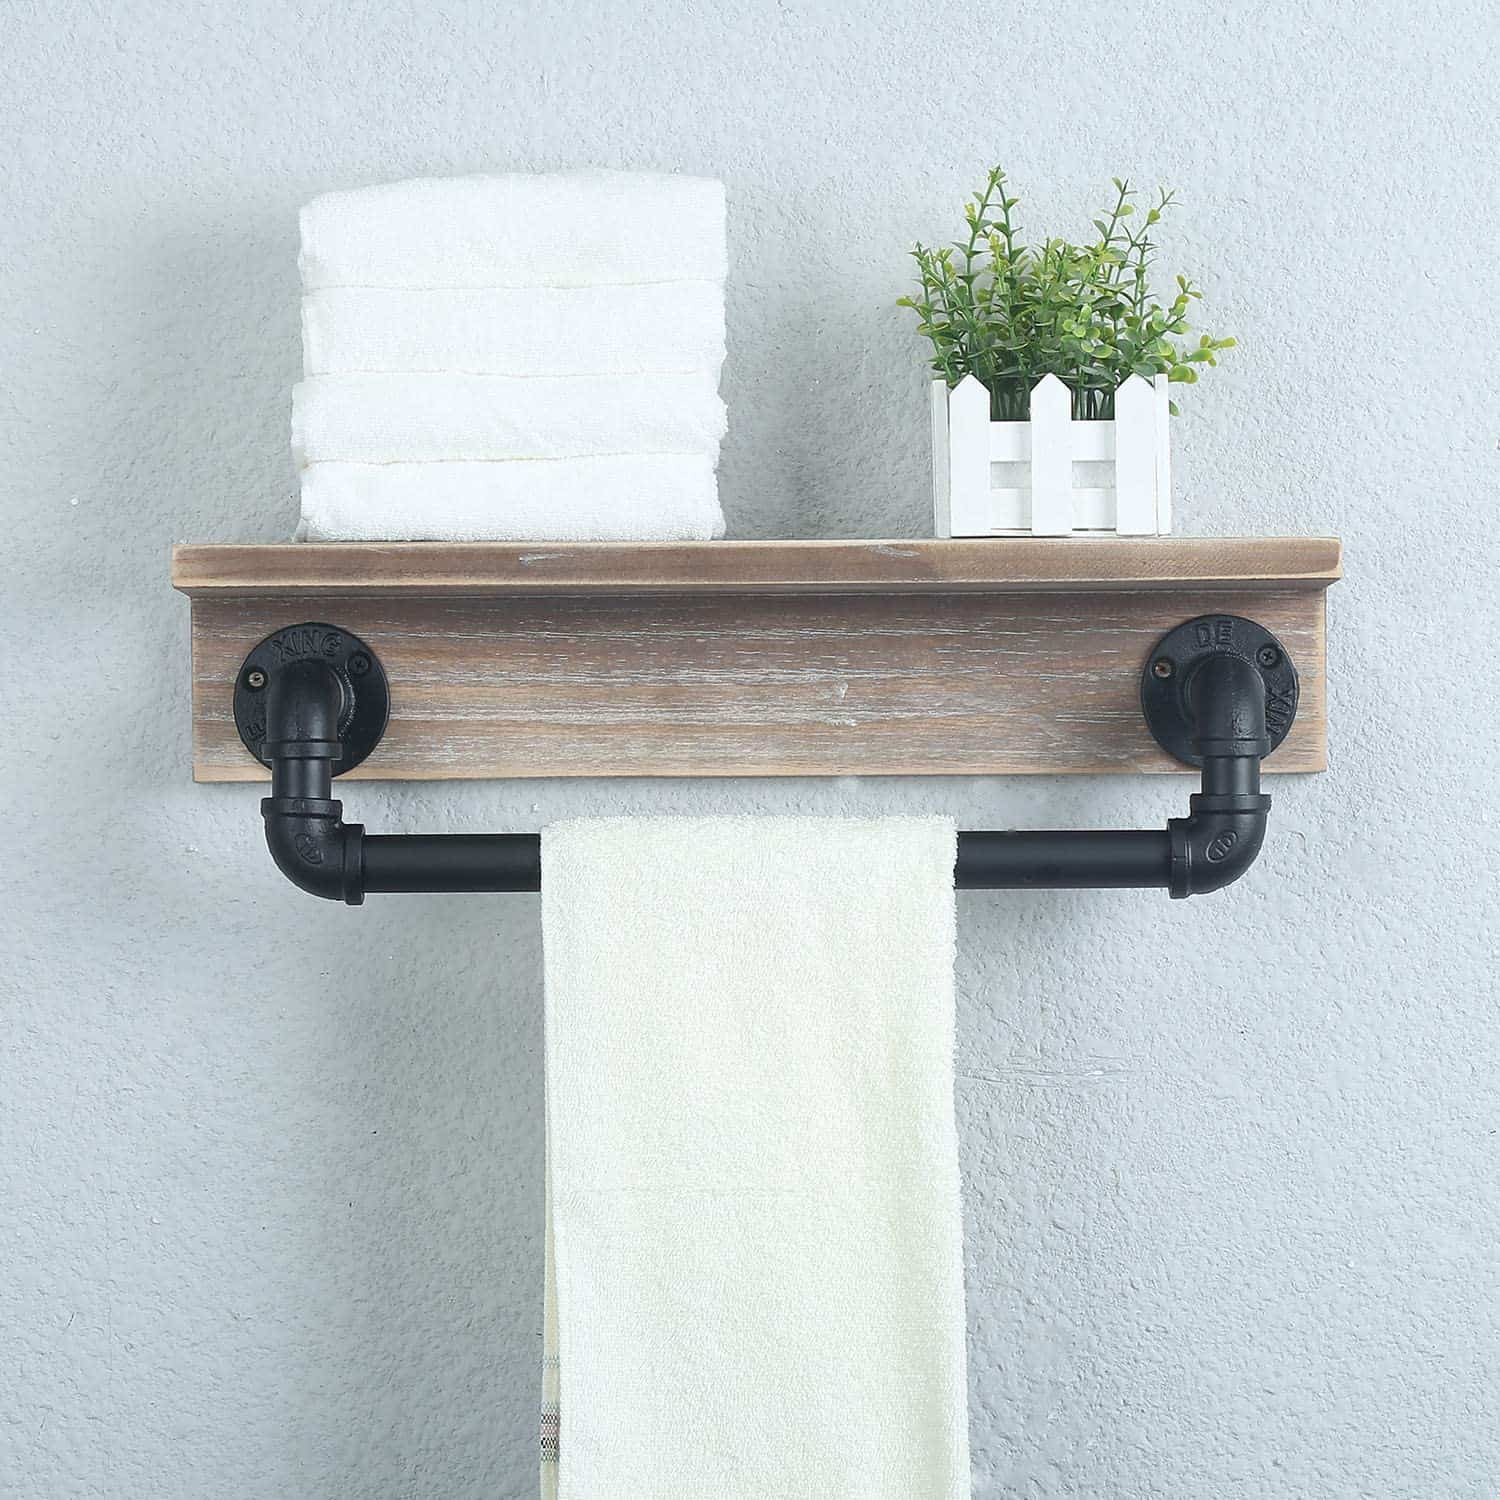 DIY Industrial Pipe Towel Rack